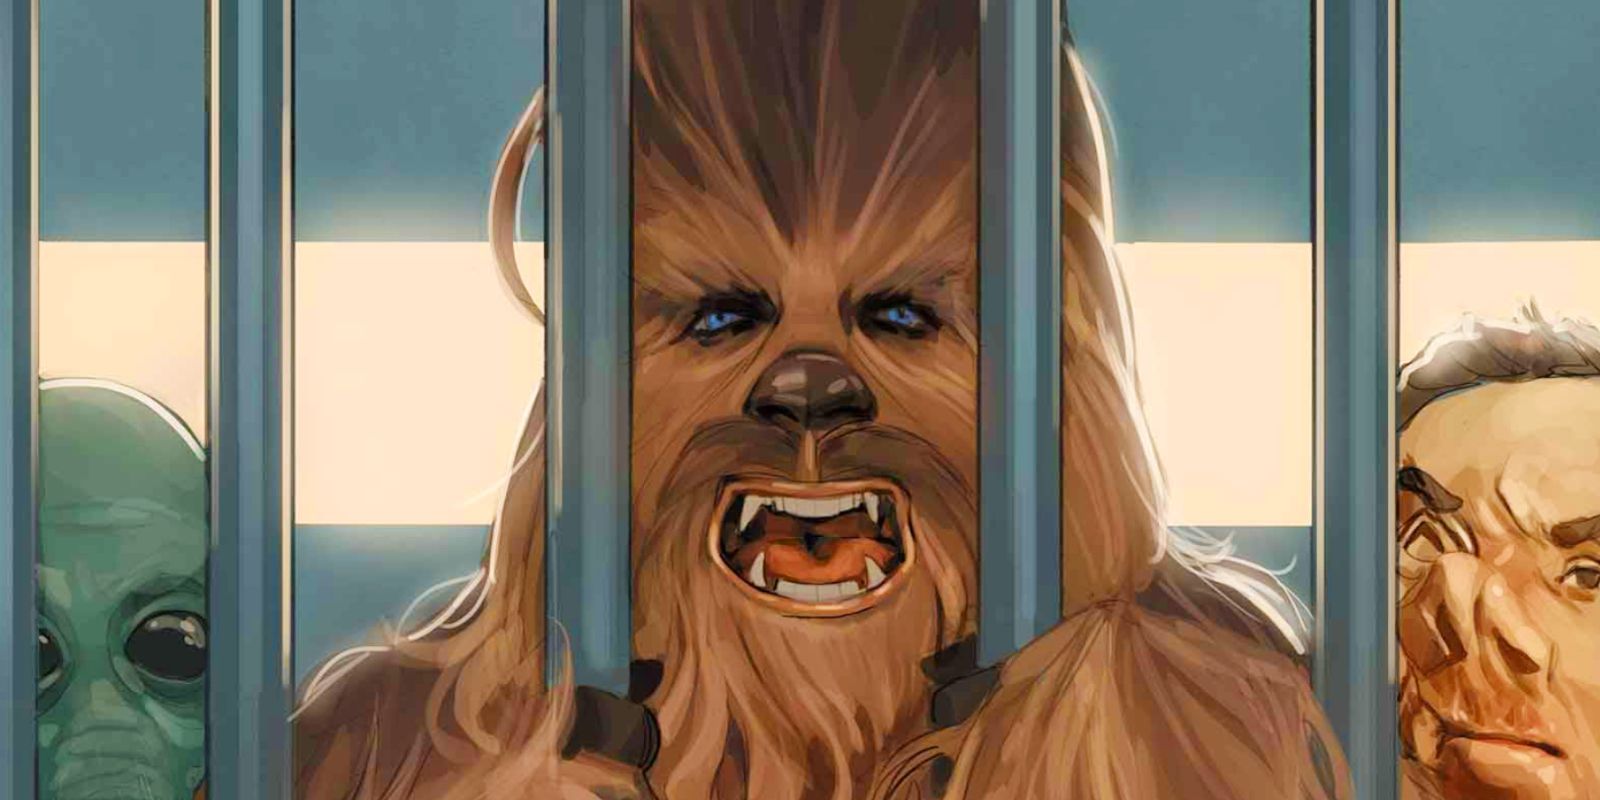 Chewbacca needs to speak again in new comics